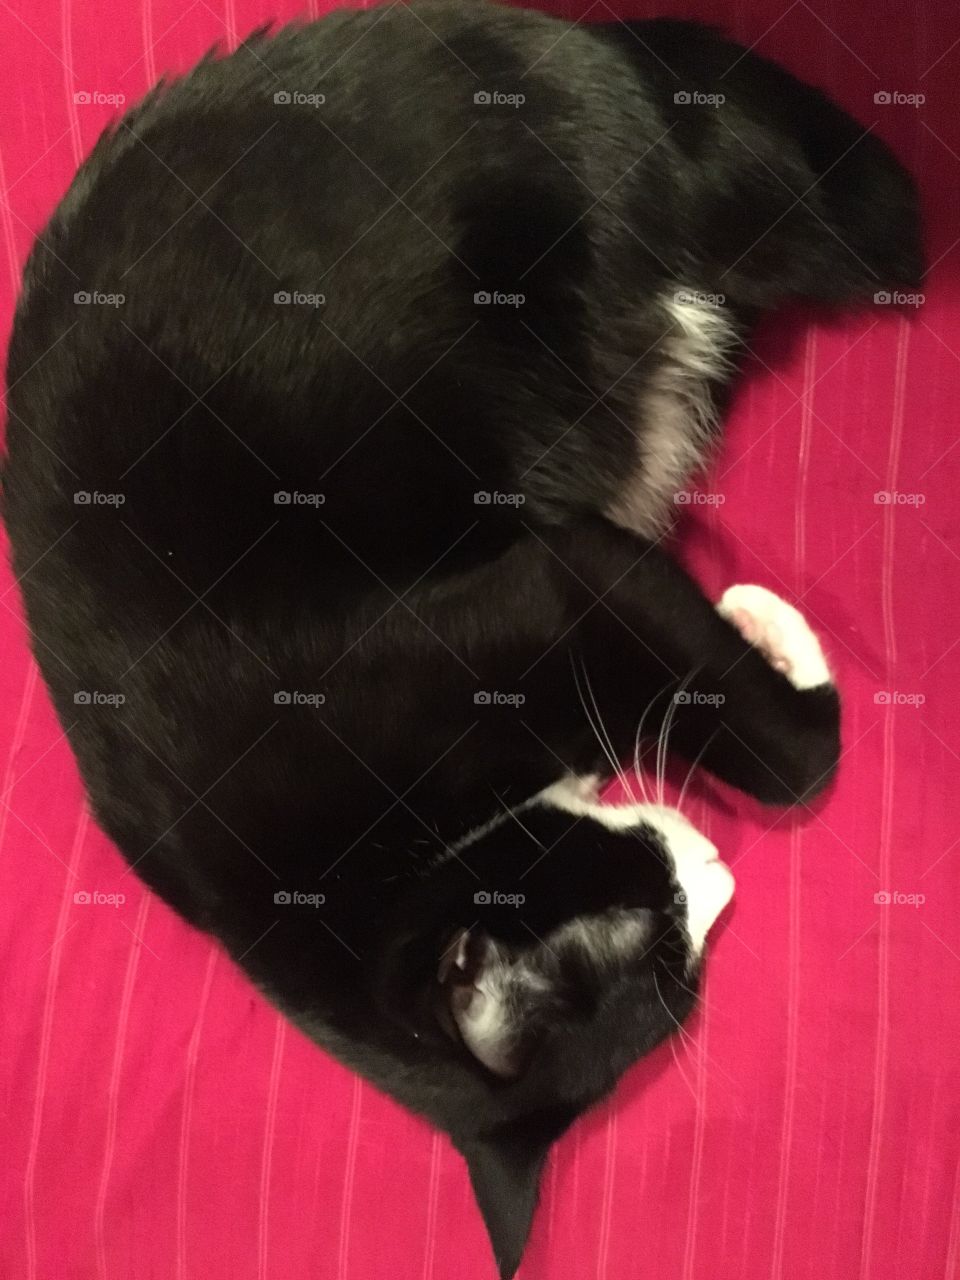 Tuxedo cat on a pillow